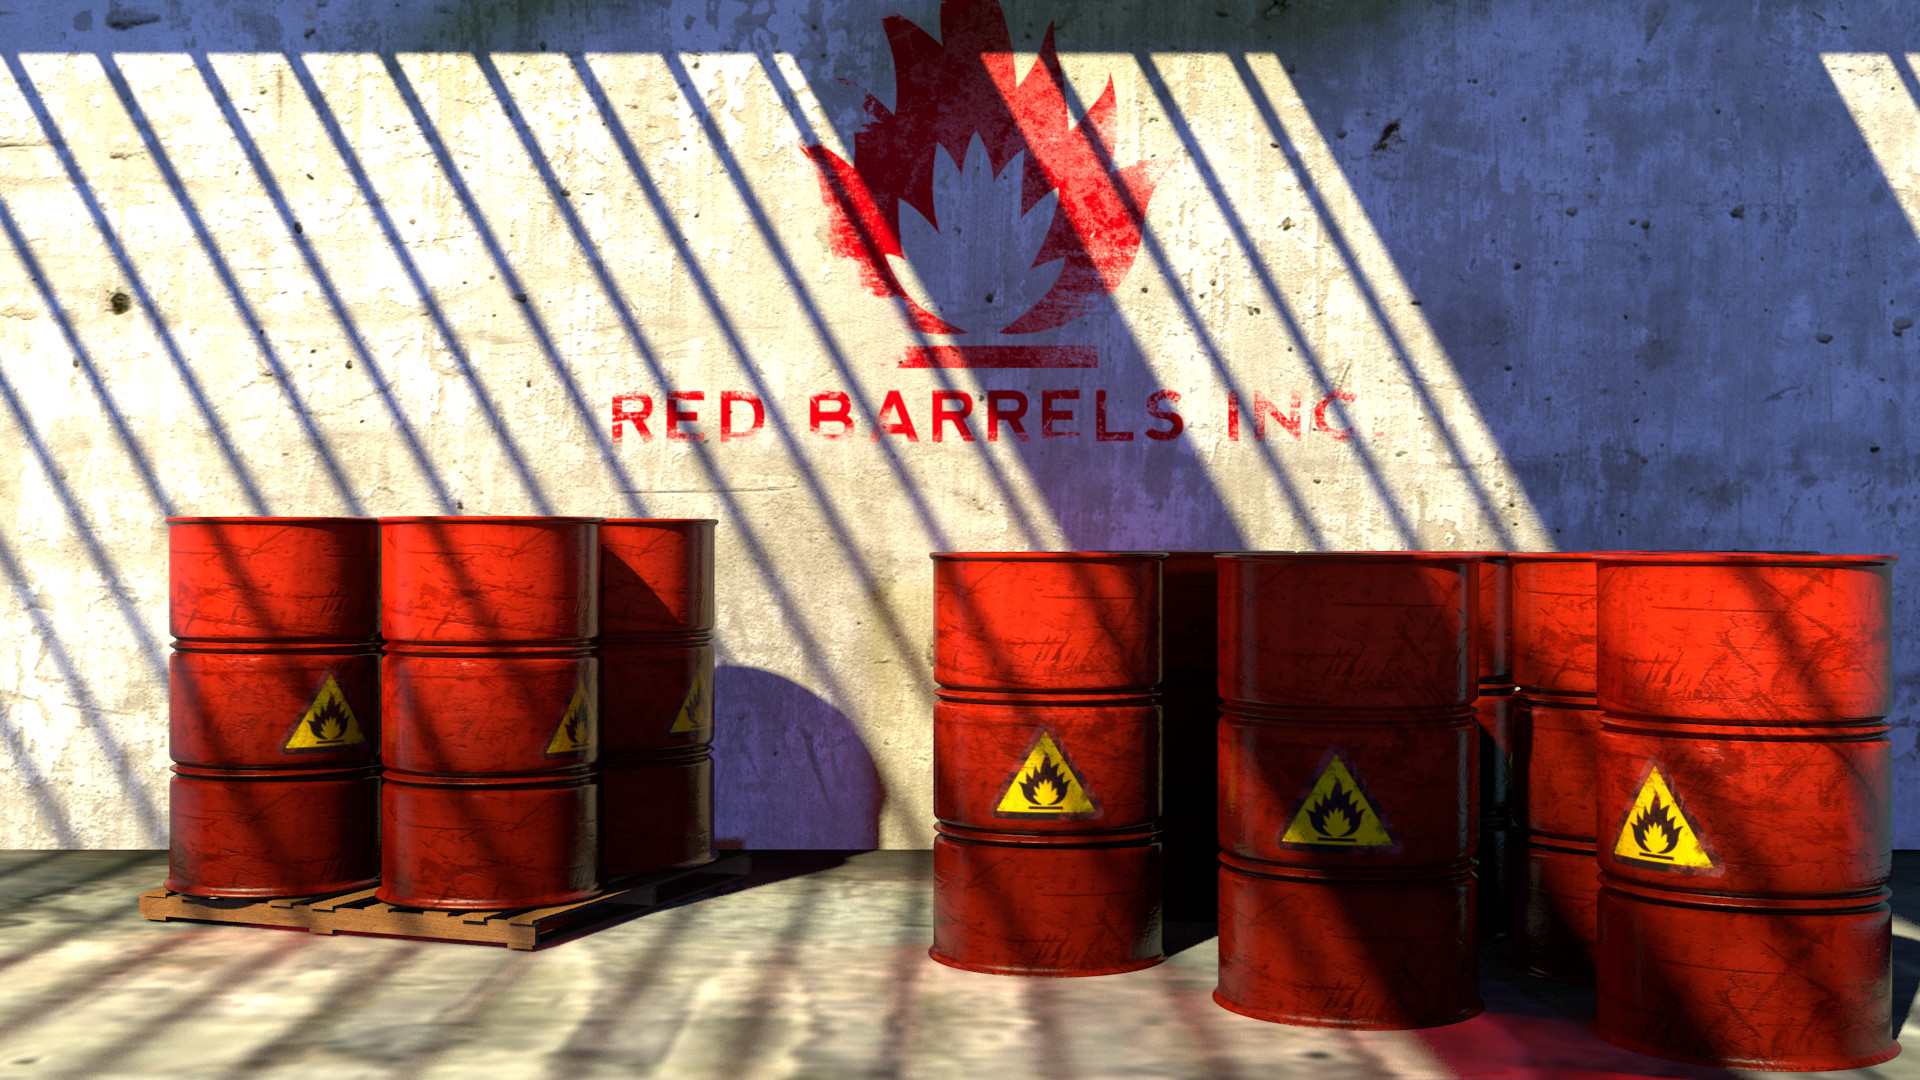 simply barrels, the red barrels.